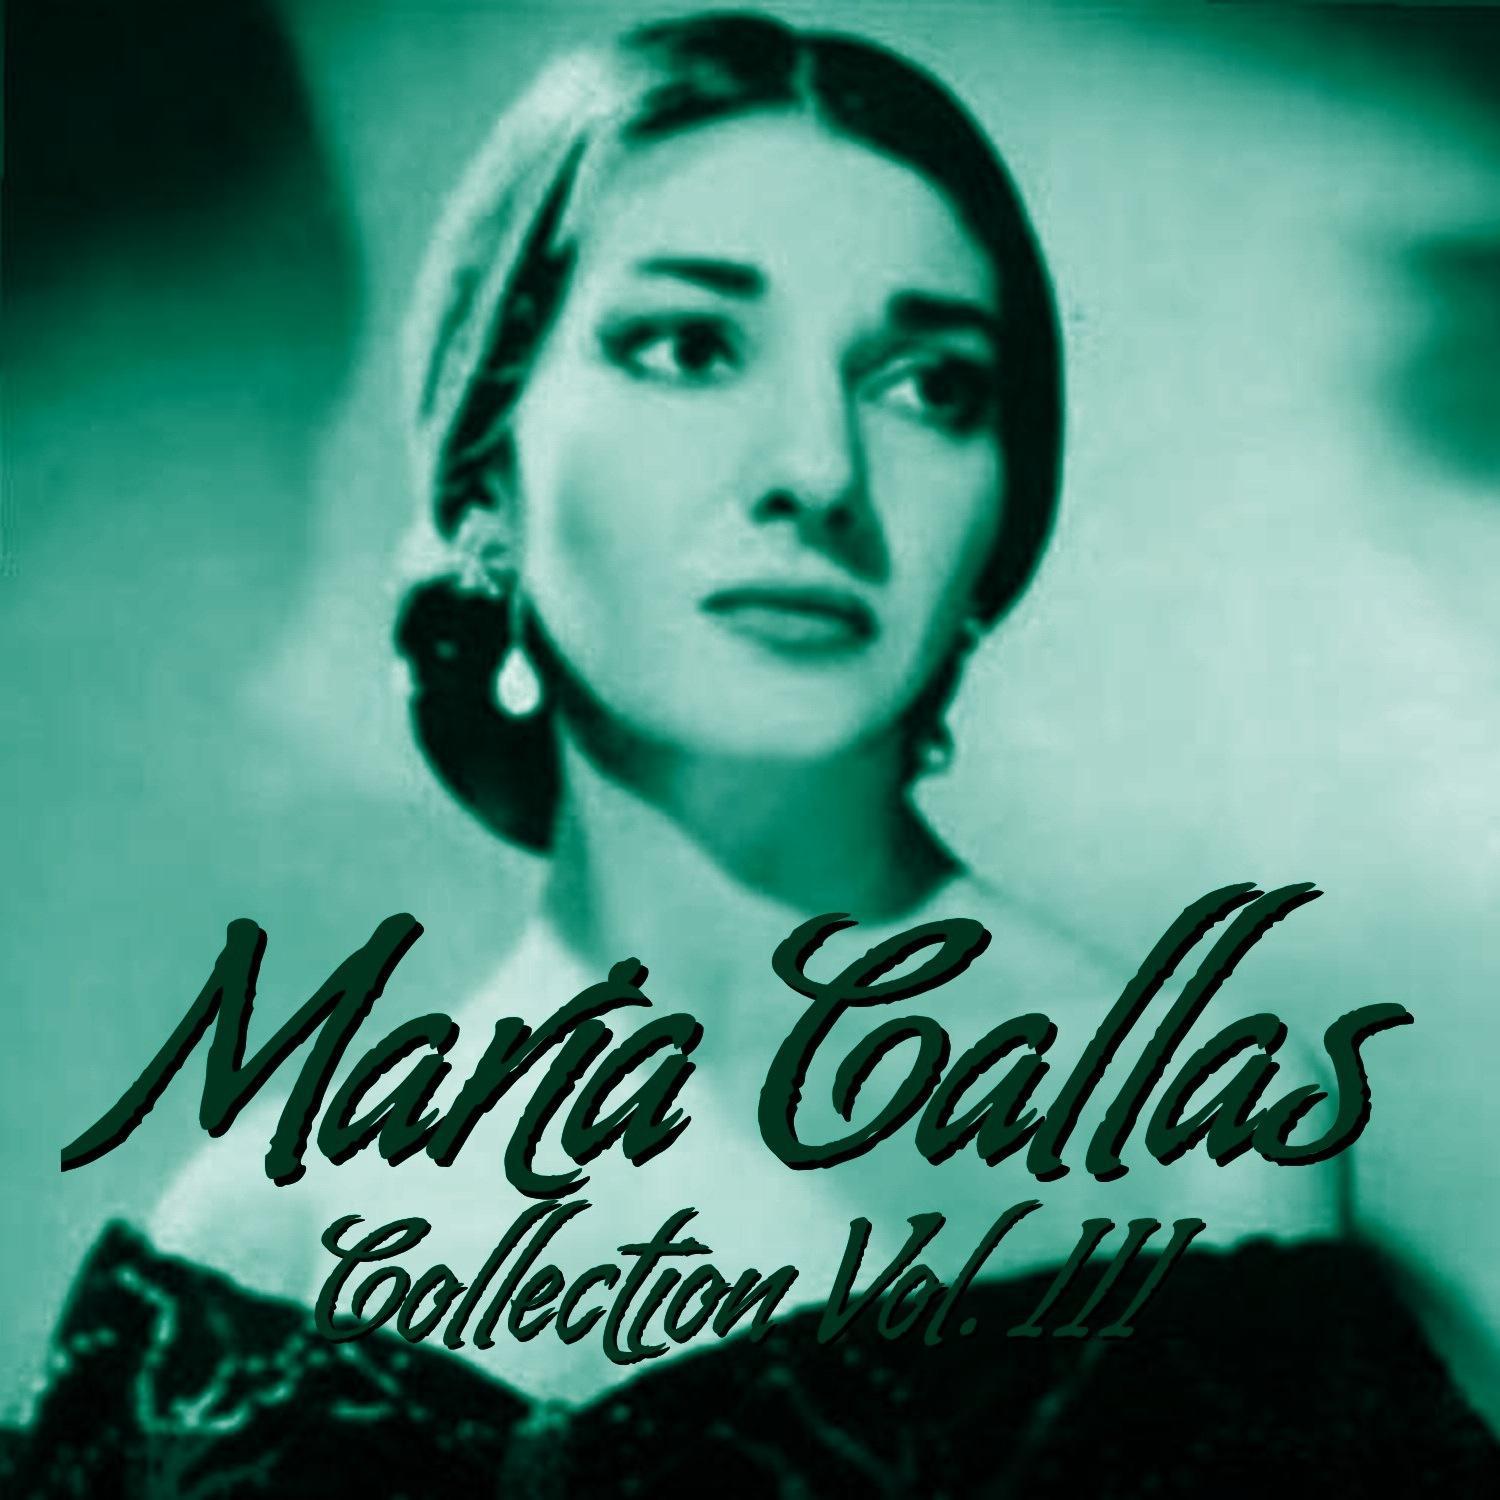 Mari a Callas Collection Vol. III